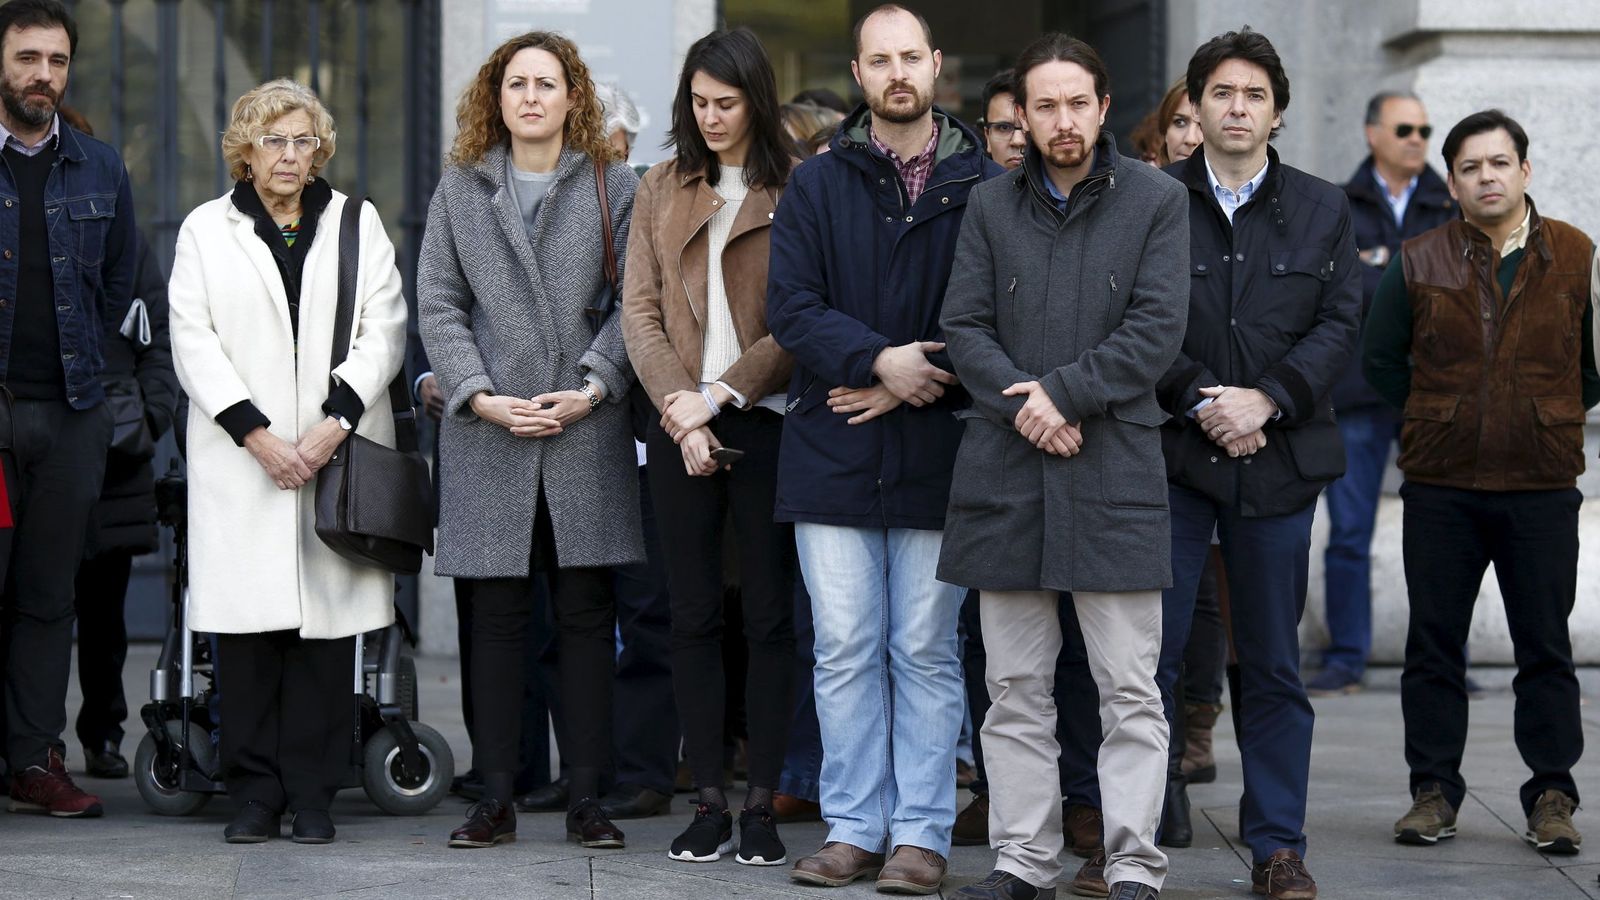 Foto: La alcadesa de Madrid, Manuela Carmena, guarda un minuto de silencio en apoyo a las víctimas del atentado de Bruselas junto a Pablo Iglesias y otros concejales. (Reuters)